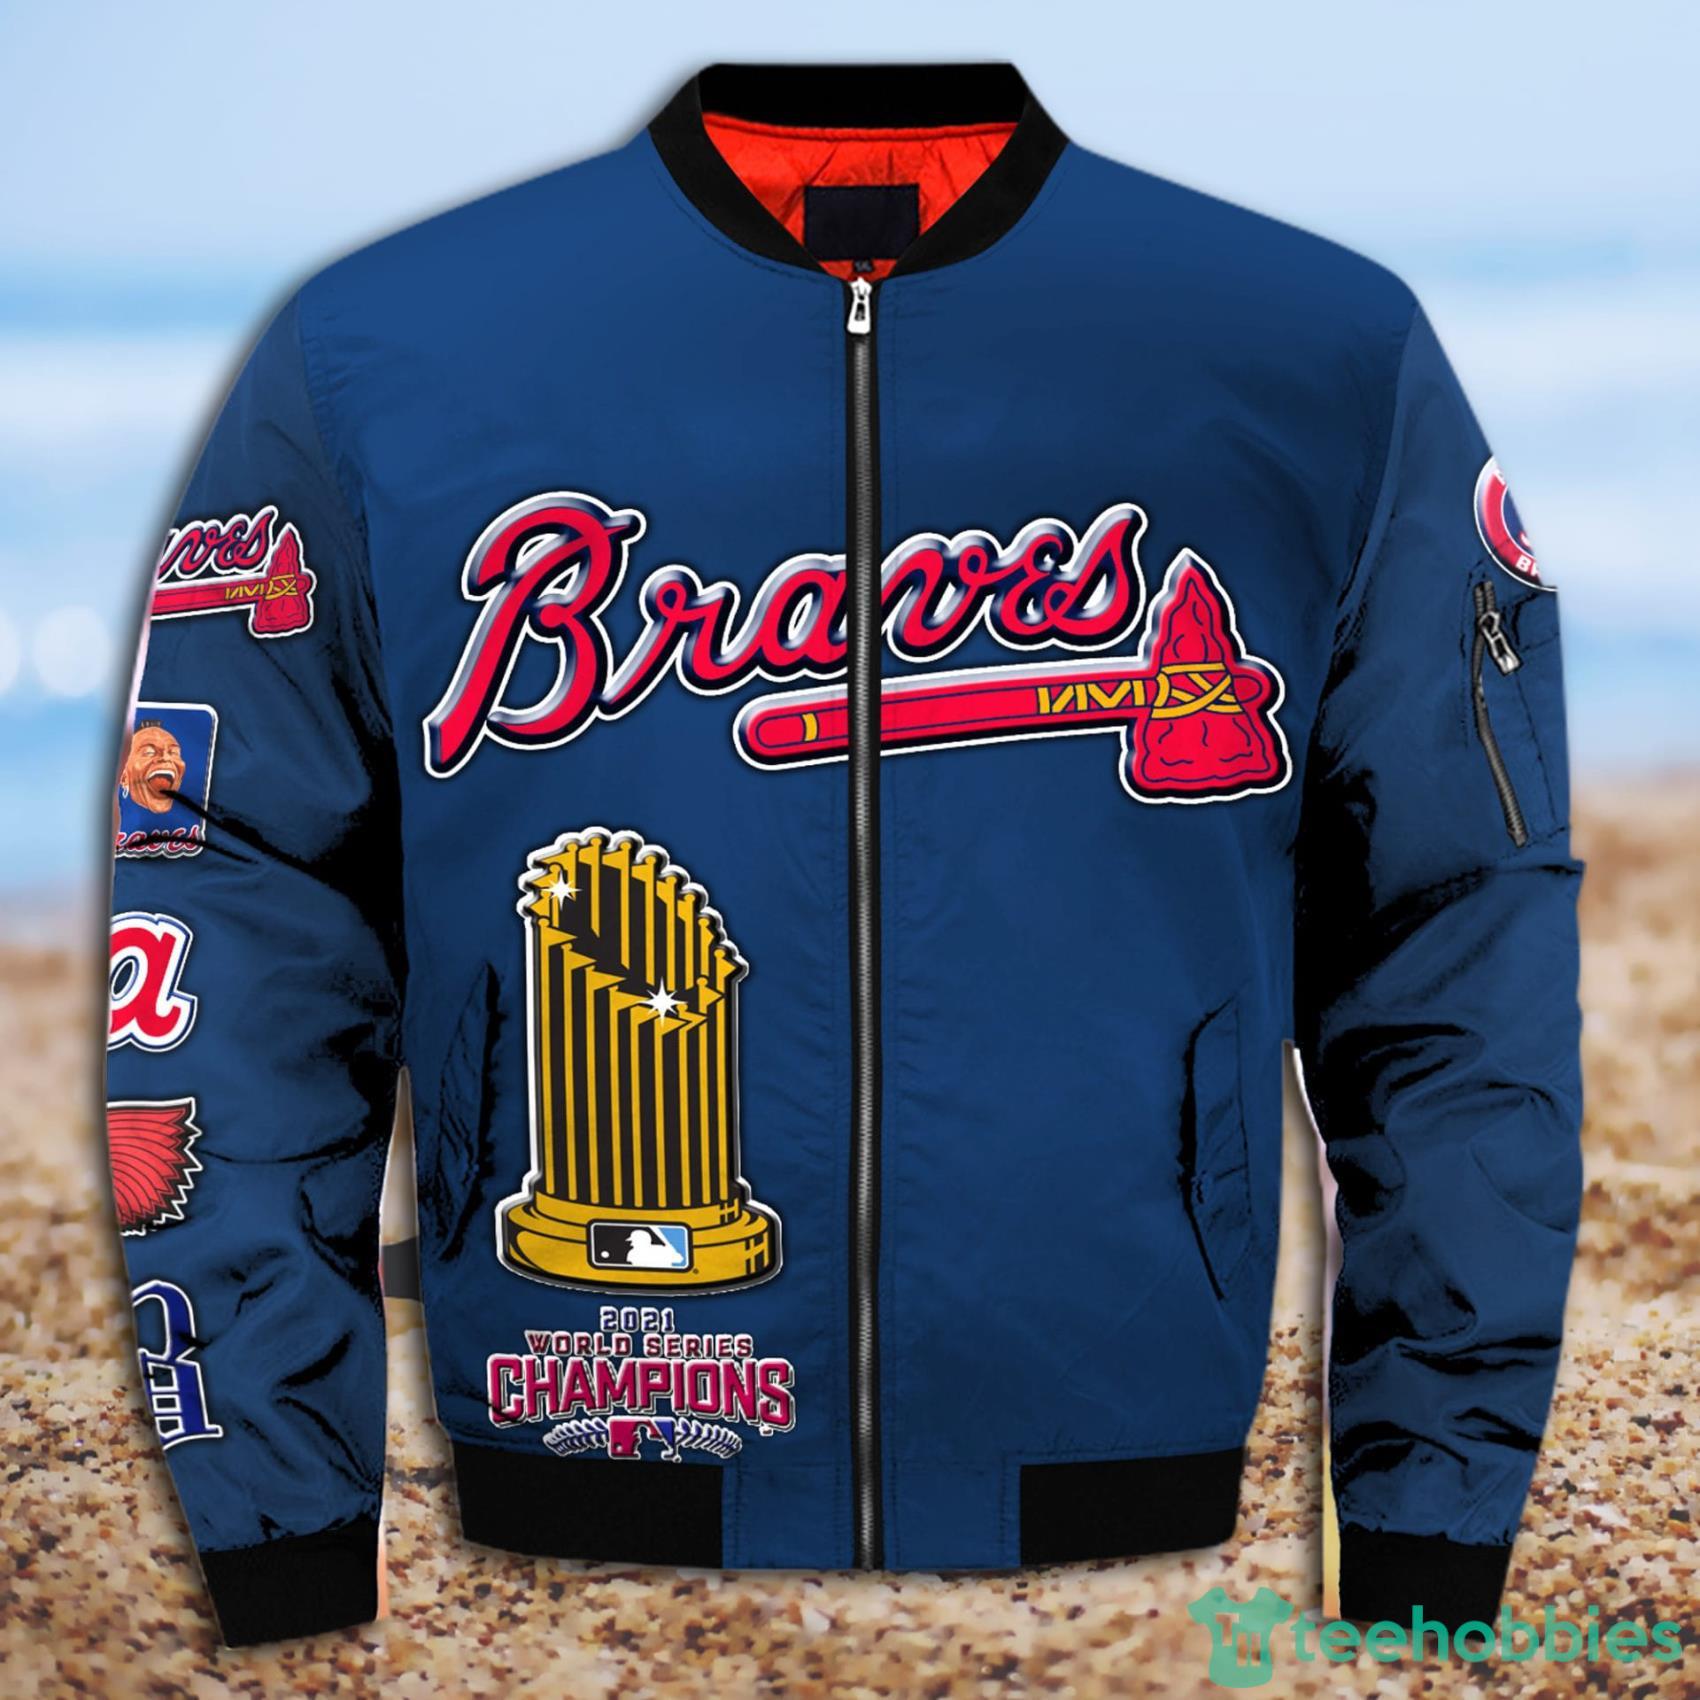 MLB Atlanta Braves World Series 2021 Champions Bomber Jacket Gift For Fans